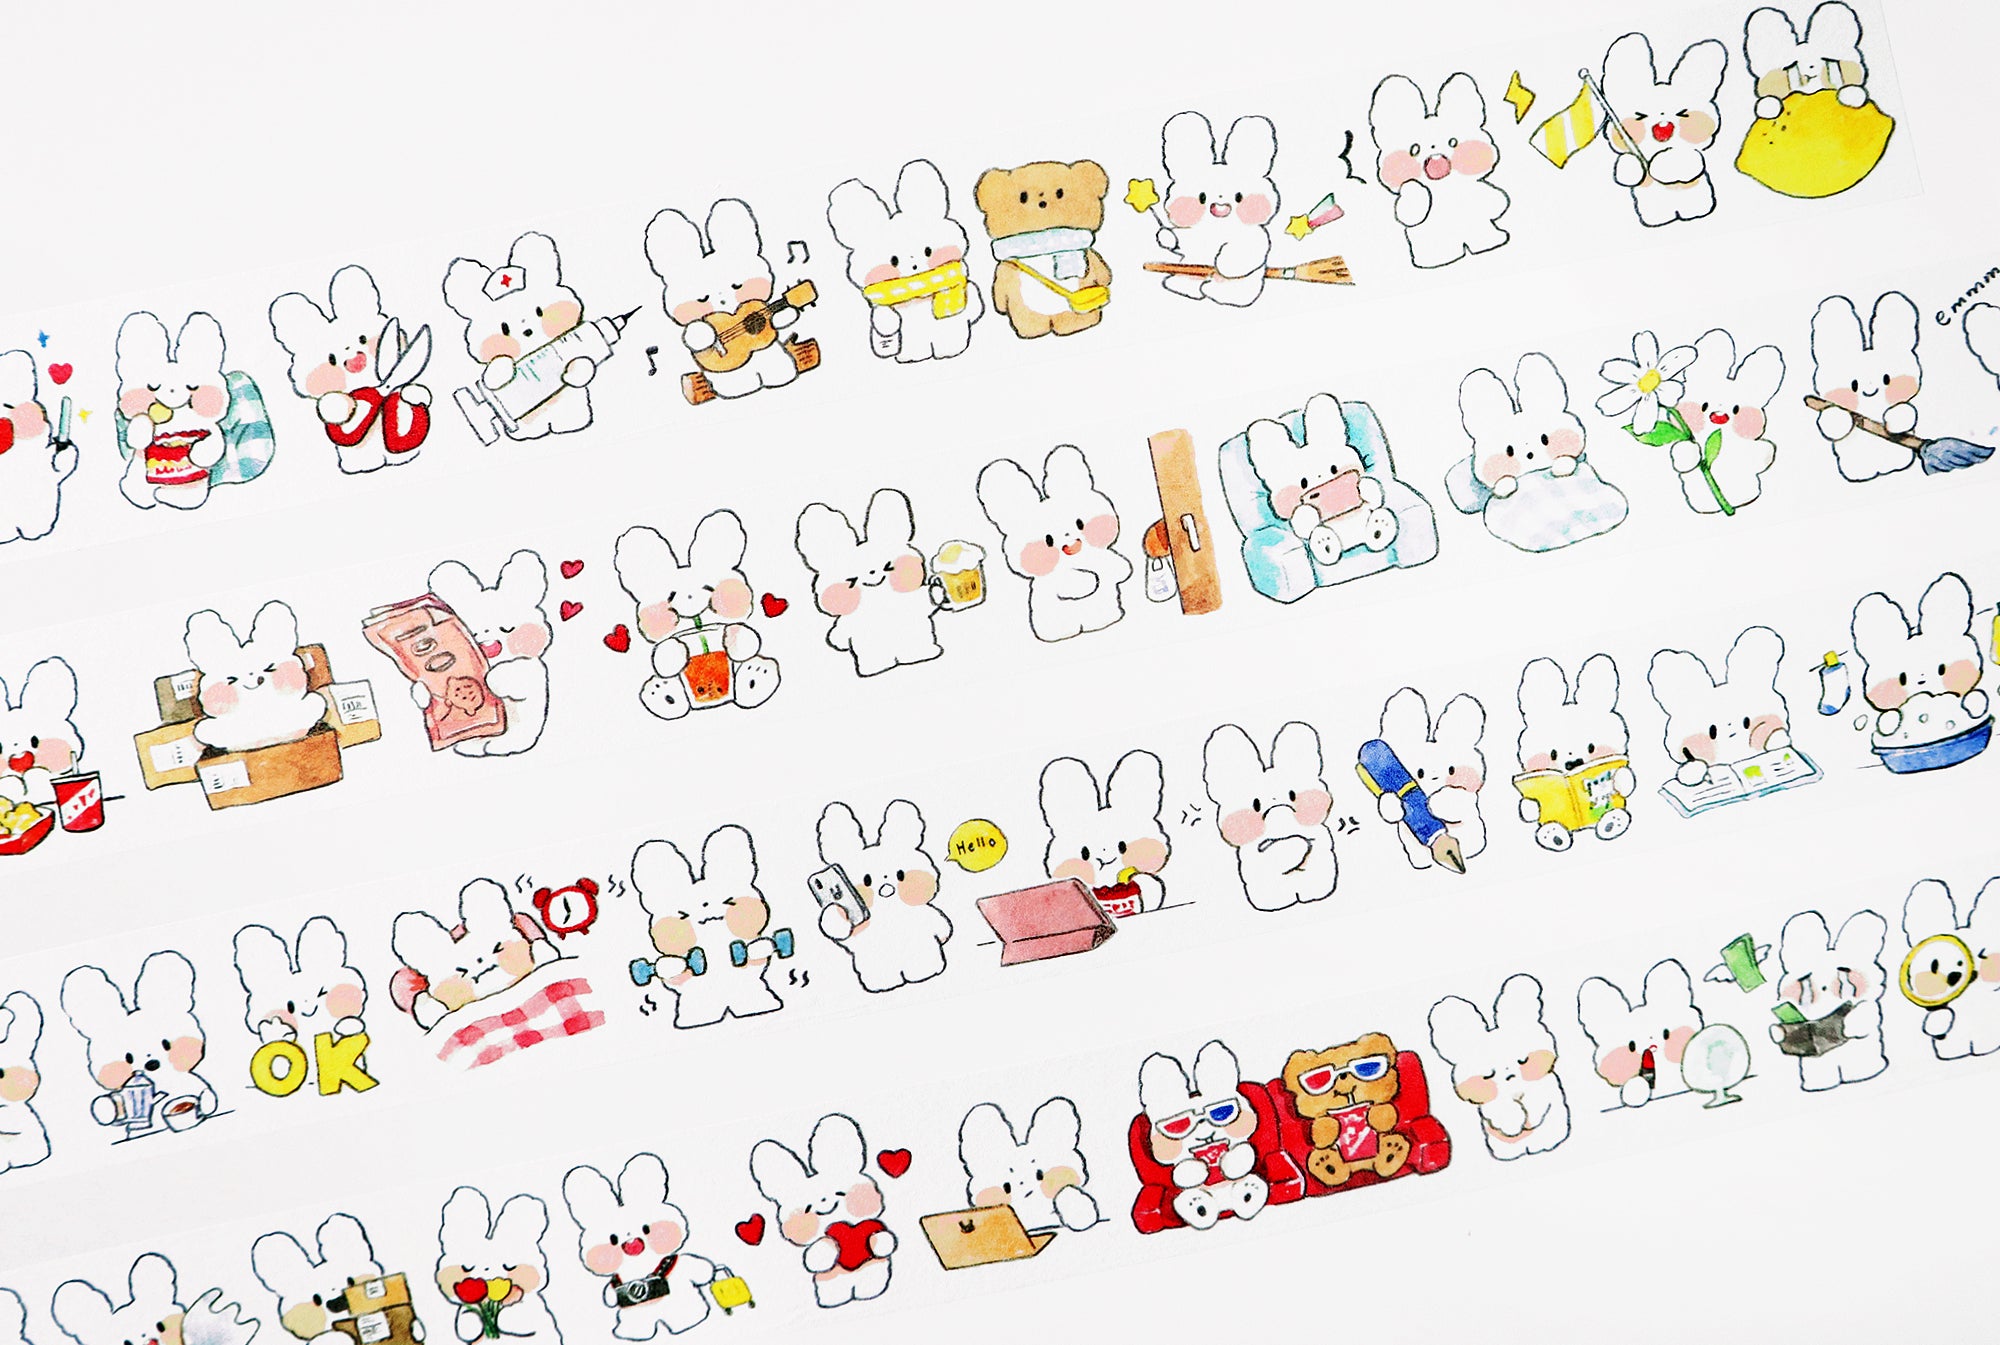 Molinta Washi Tape: Bunny's Diary